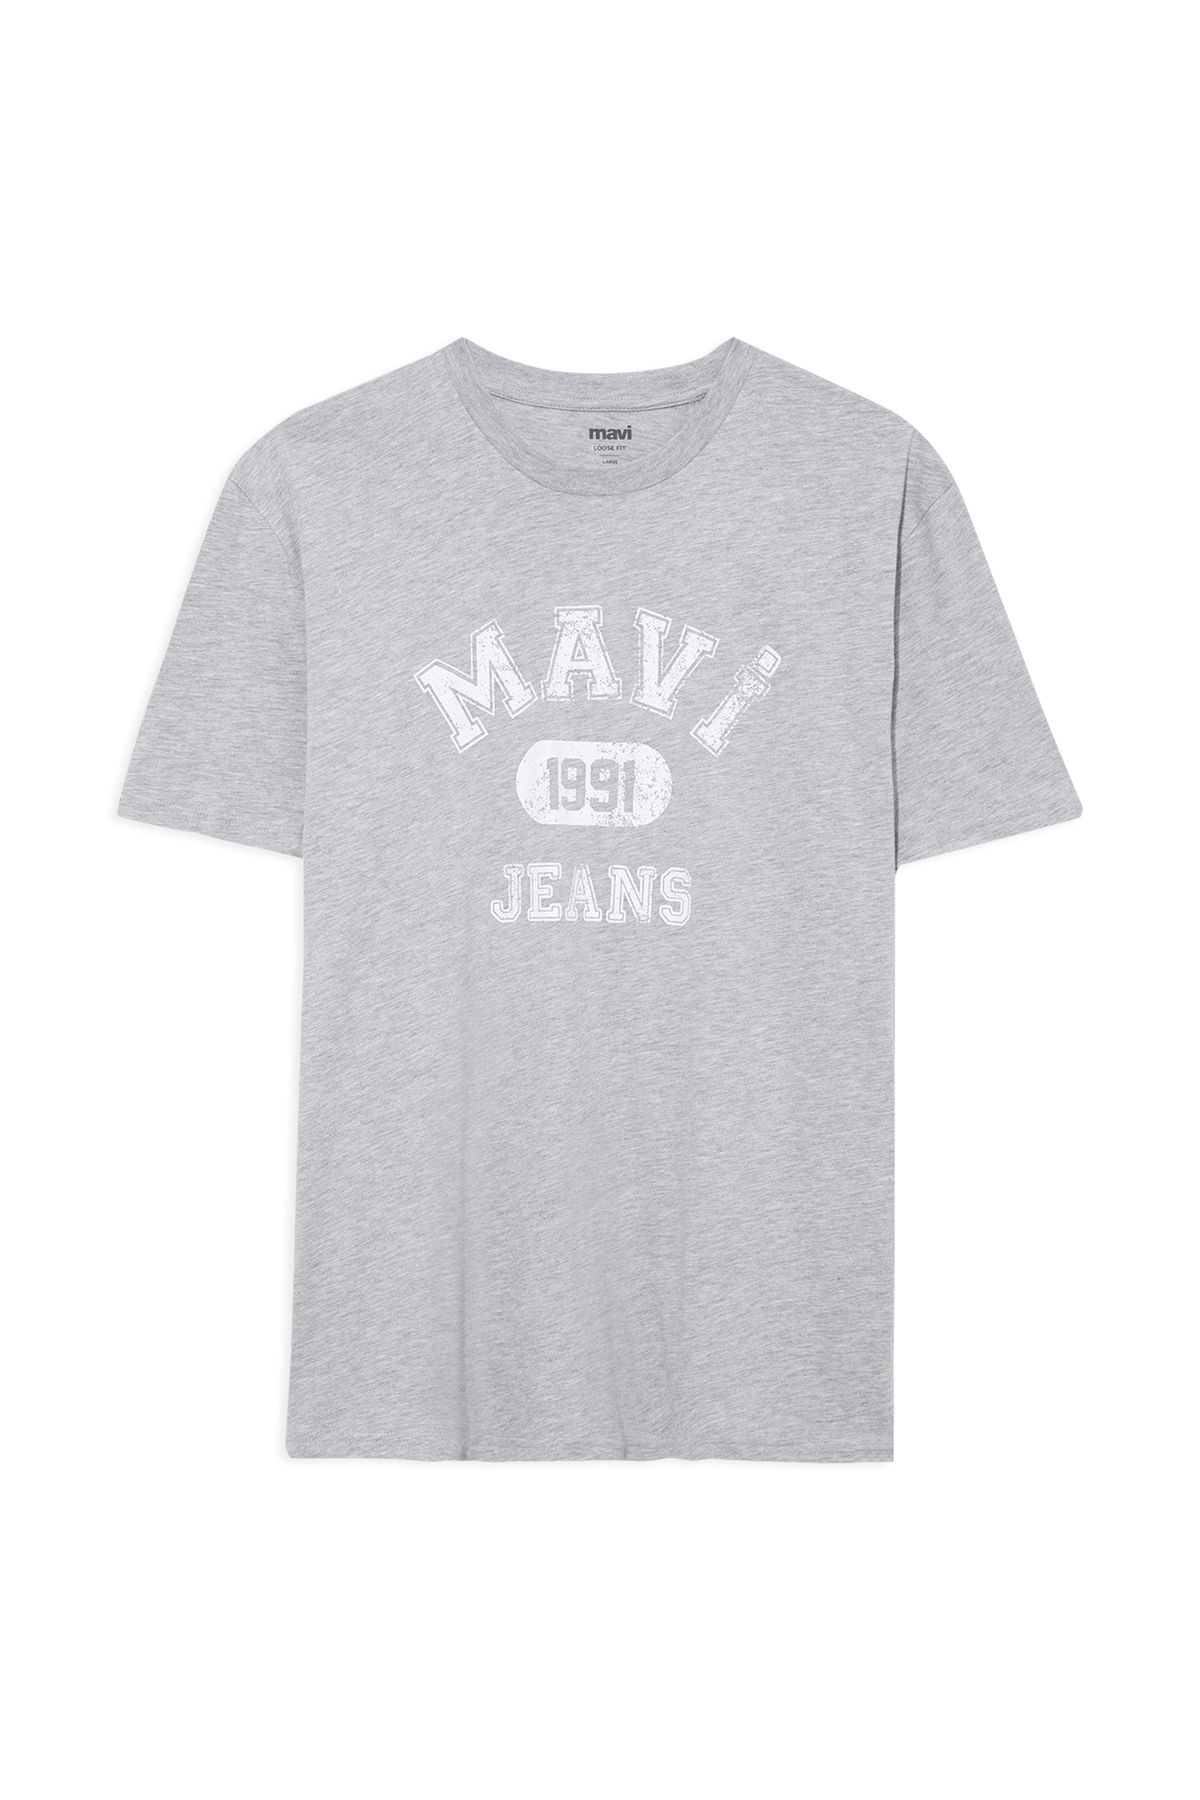 Mavi آرم چاپ شده تی شرت خاکستری تناسب / برش راحت 067140-80196